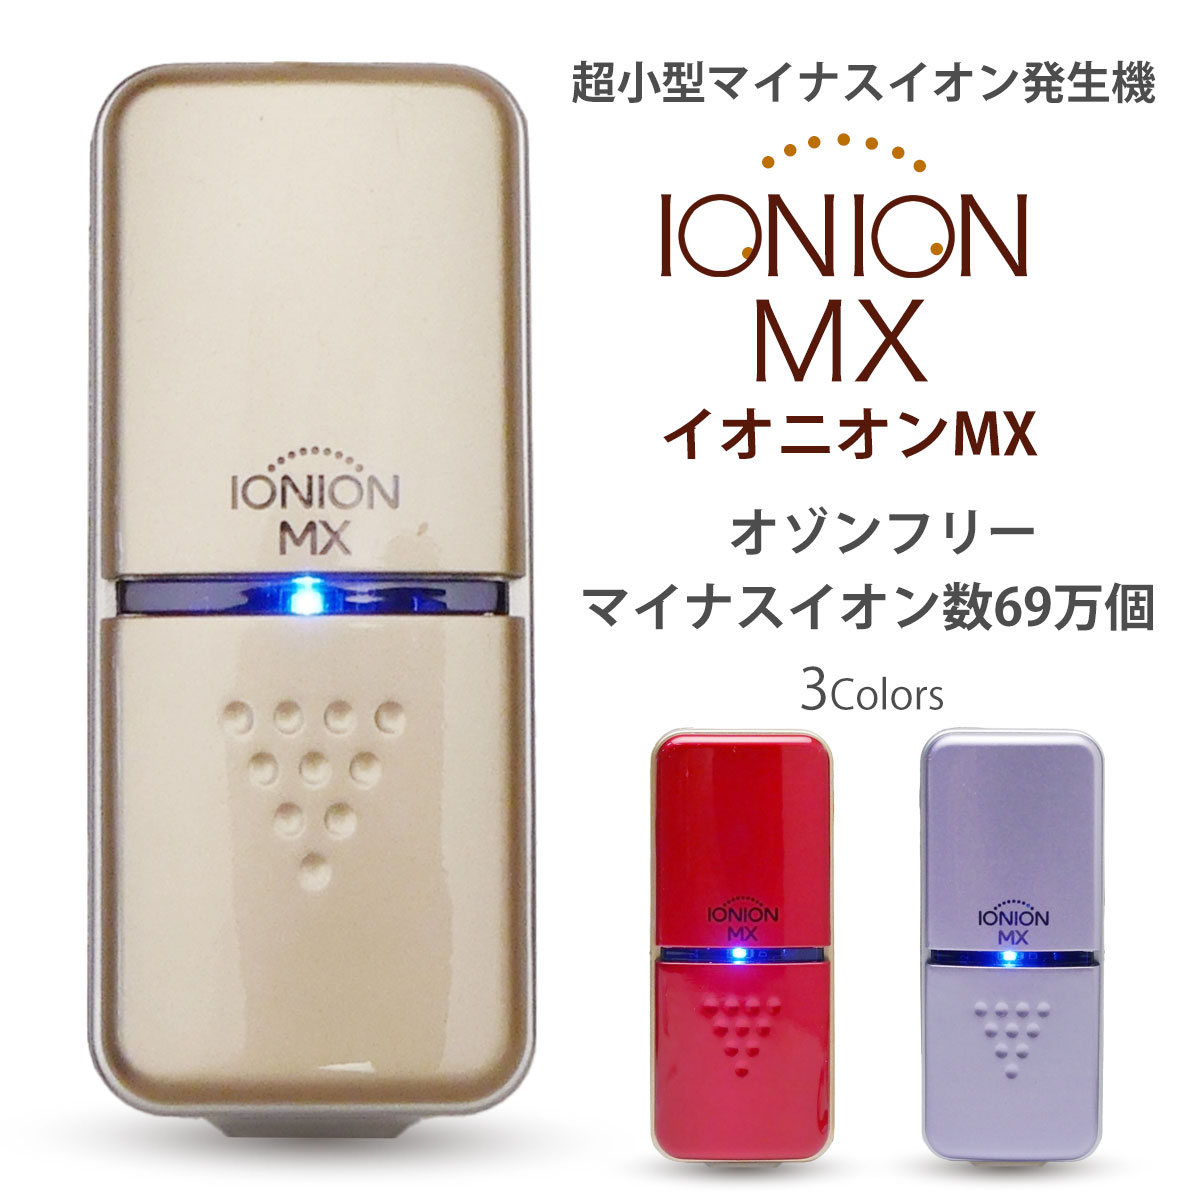 【楽天市場】【お買い物マラソン お得なクーポン配布中!】IONION 